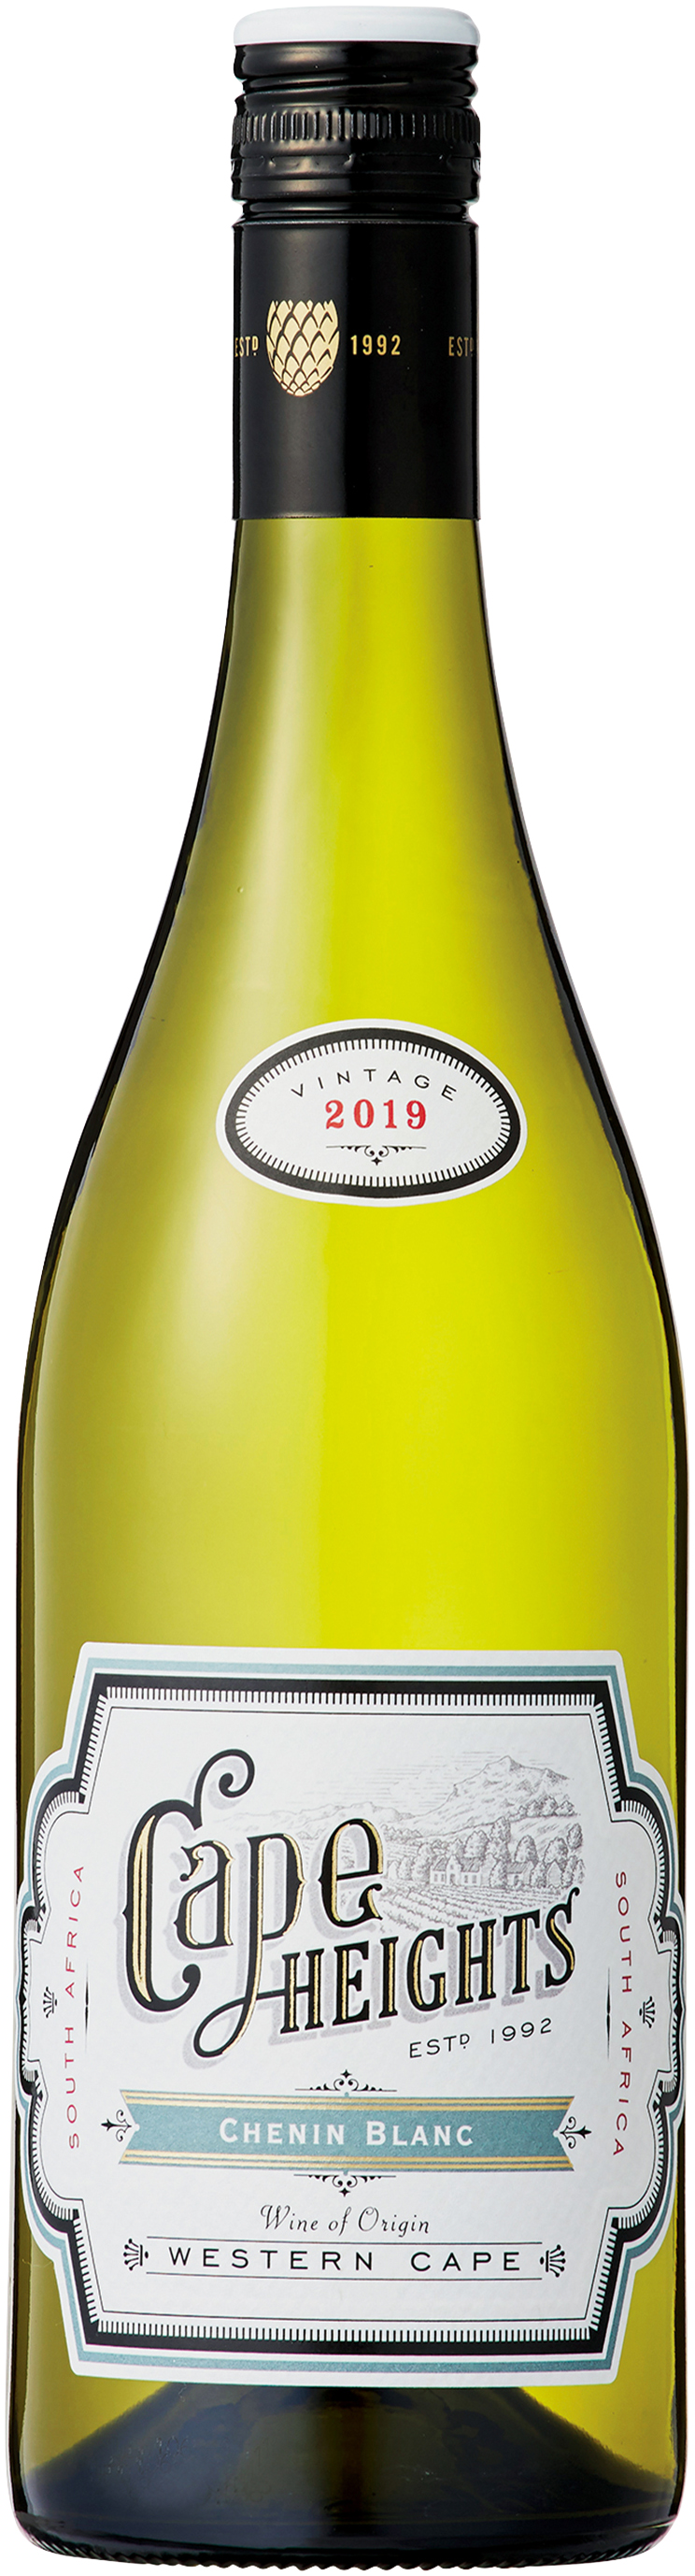 熟成がワインに重みと個性を与えてくれています NEW ARRIVAL ケープ ハイツ シュナン 2019 ブティノBoutinot 入手困難 ブラン